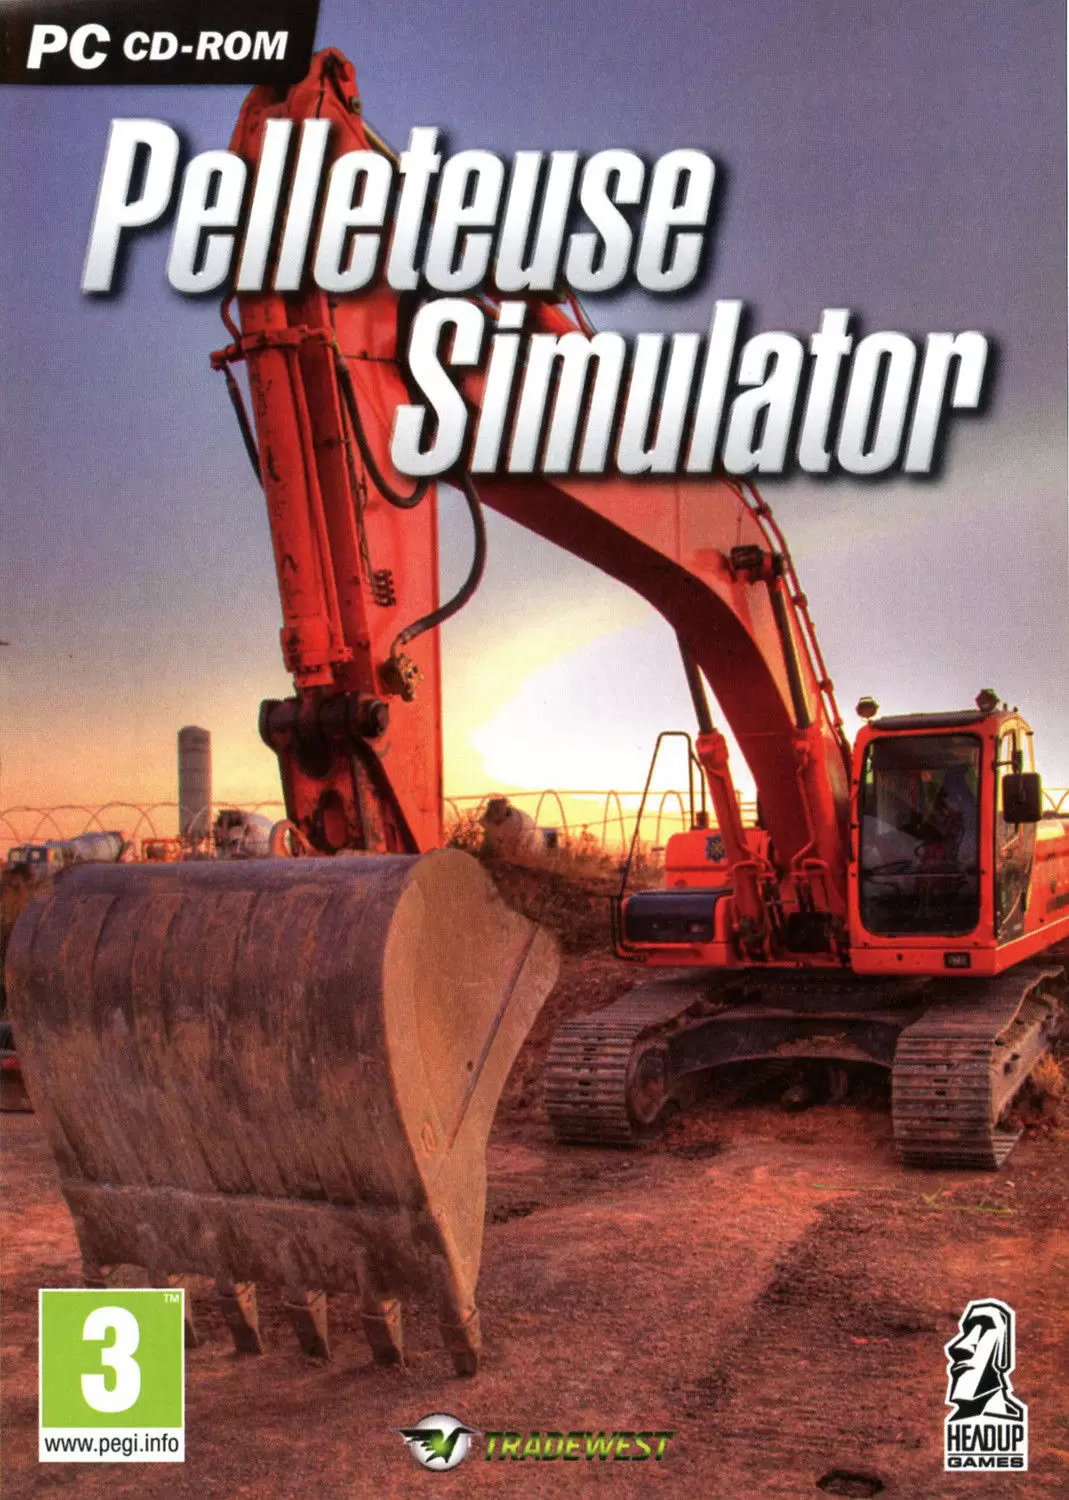 PC Games - Pelleteuse Simulator